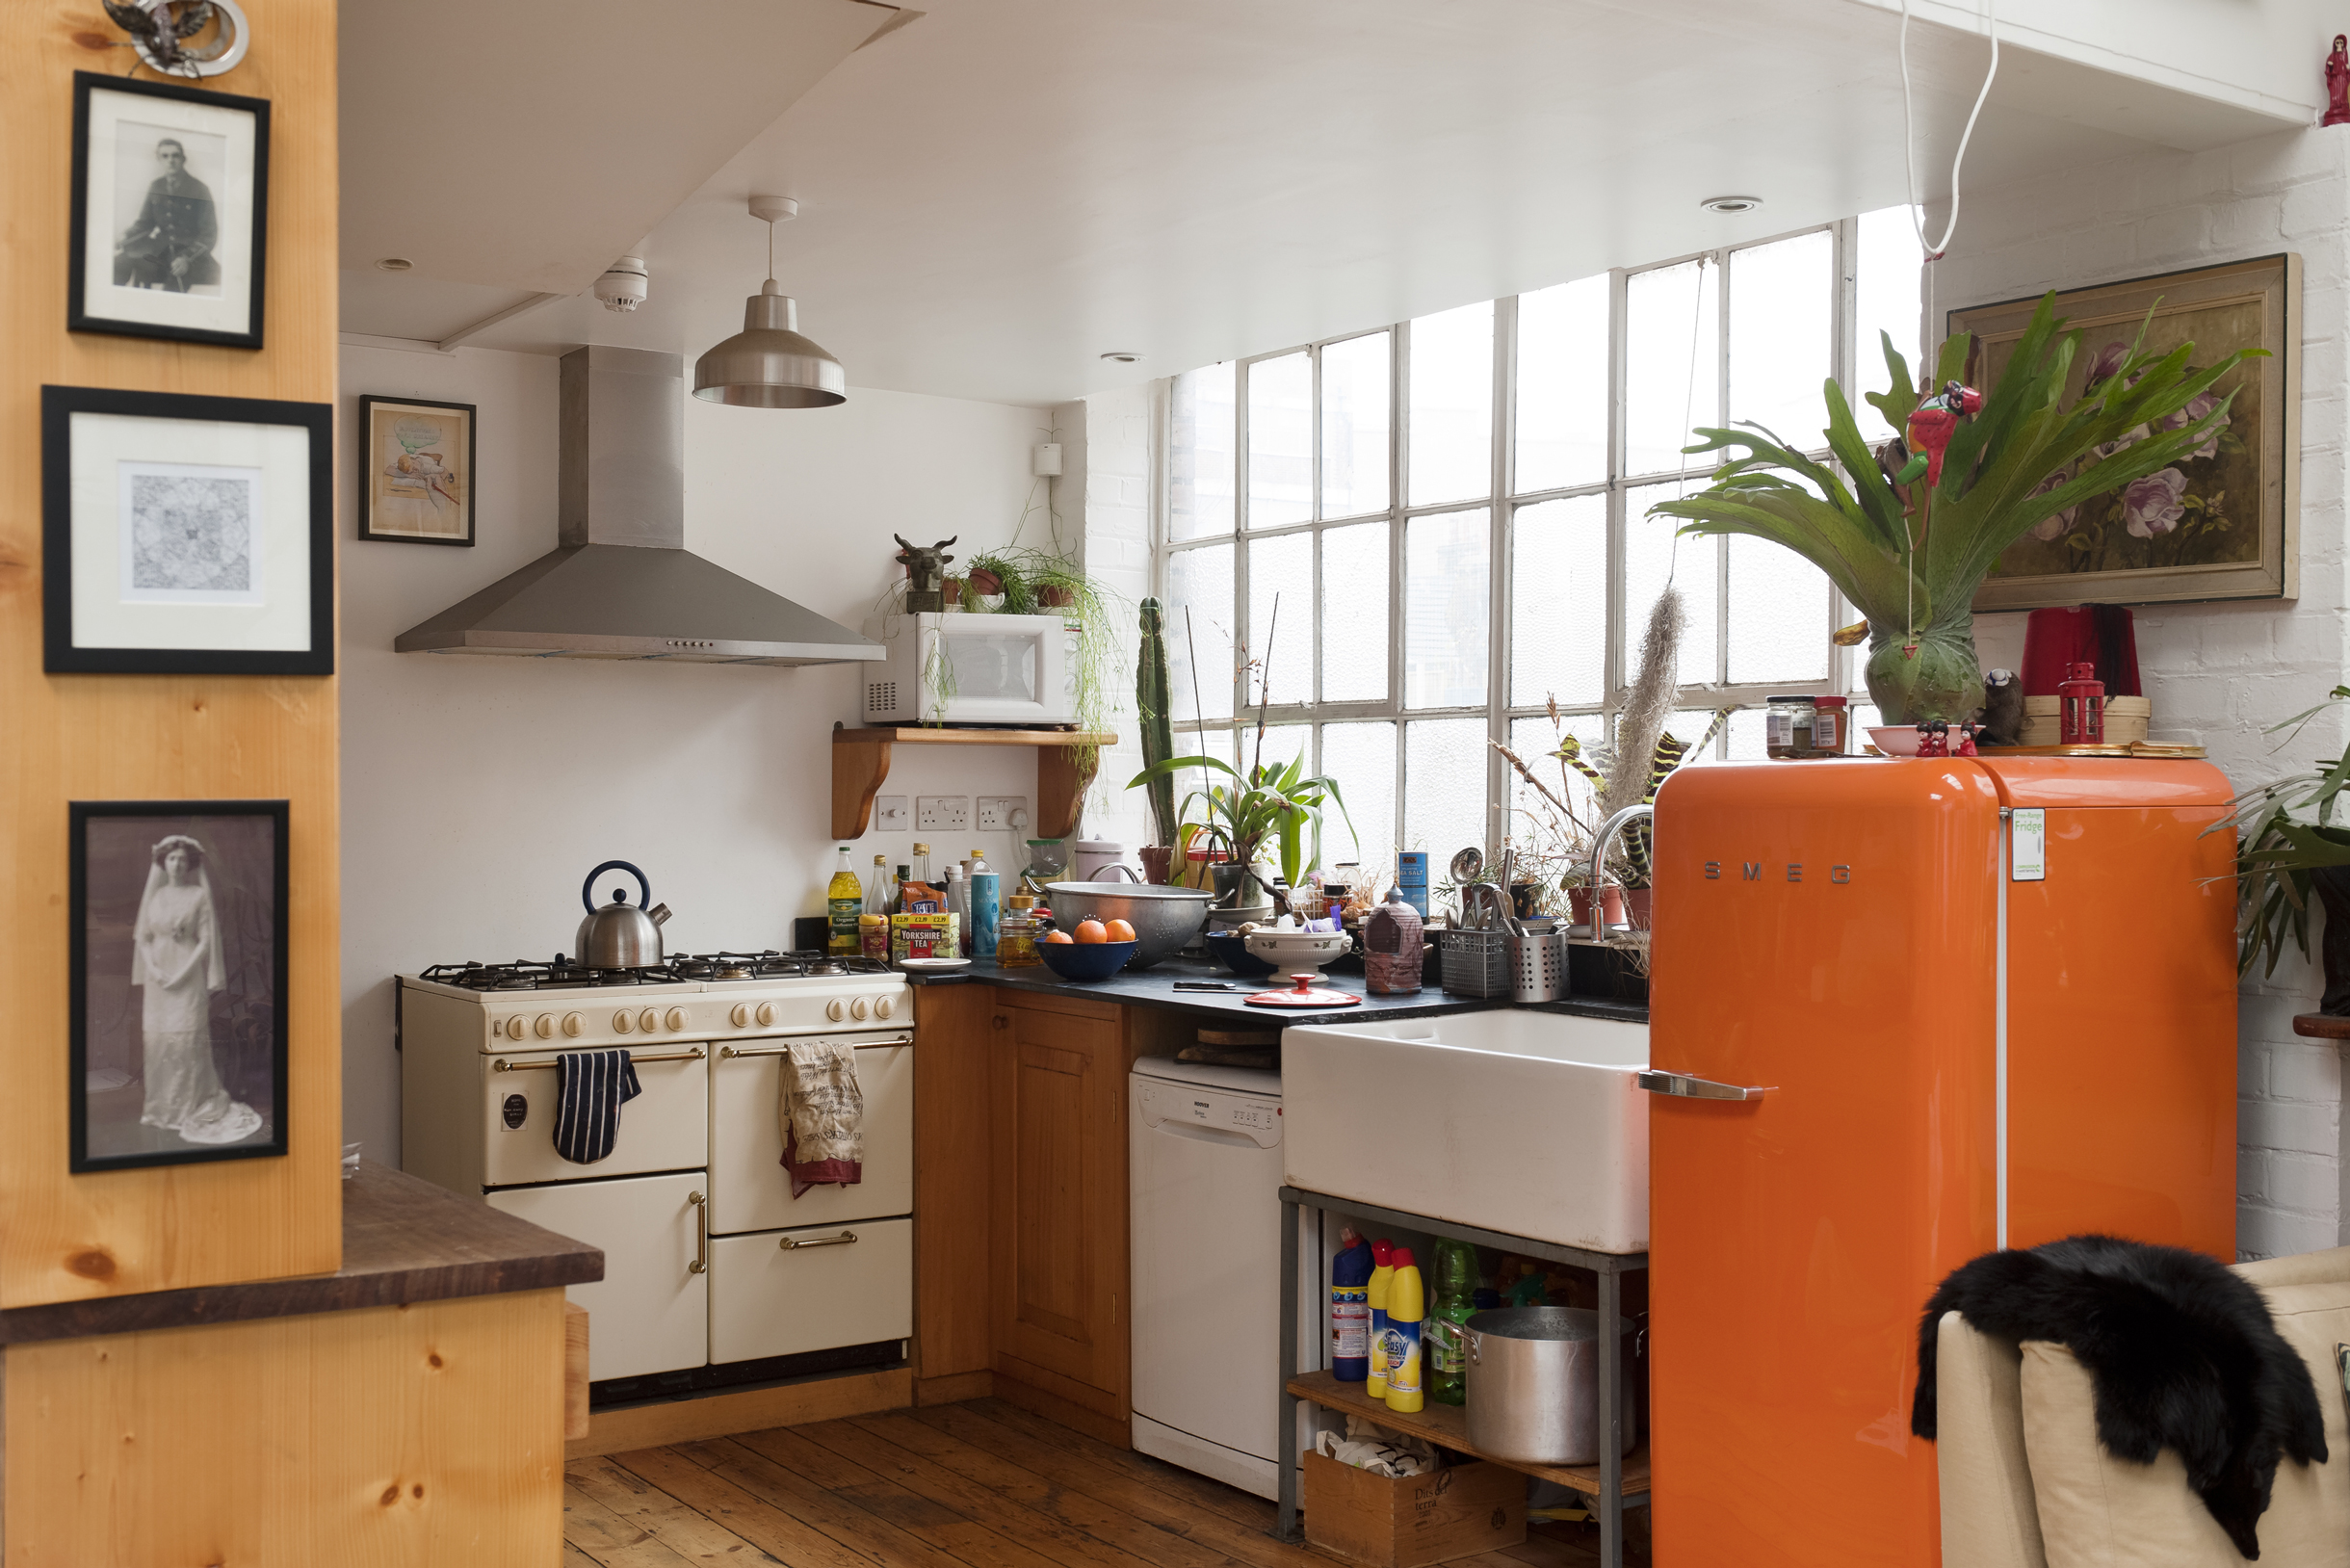 Винтажные детали, например постеры и техника, отлично дополняют стиль мидсенчури в кухне. Обратите внимание, что стены и пол остаются нейтральными. Фотография: Andreas von Einsiedel / Getty Images